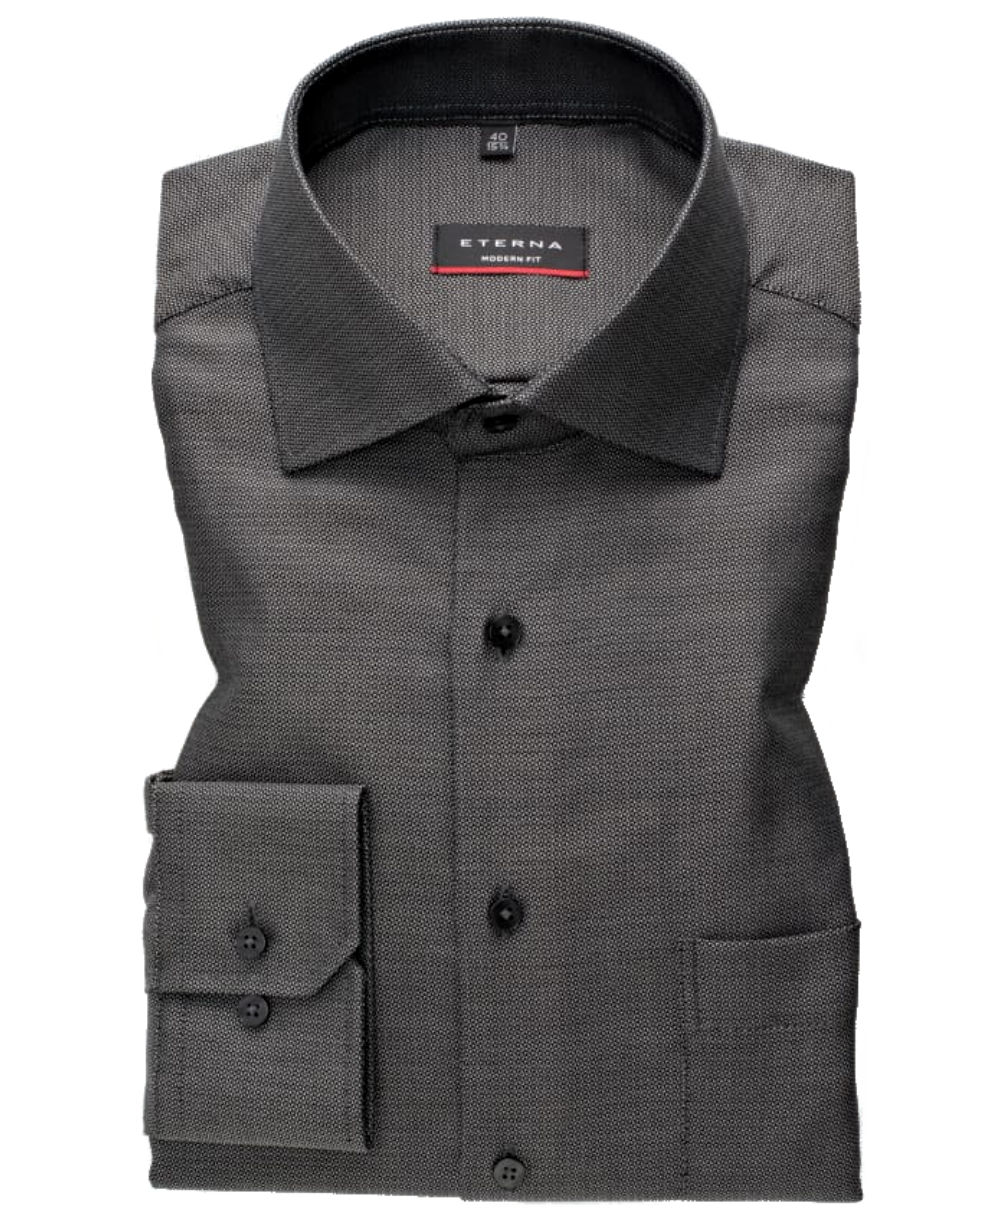 eterna Modern Fit Langarmhemd schwarz grau dezentes Strukturmuster -  Hochwertige Herrenmode führender Marken zu fairen